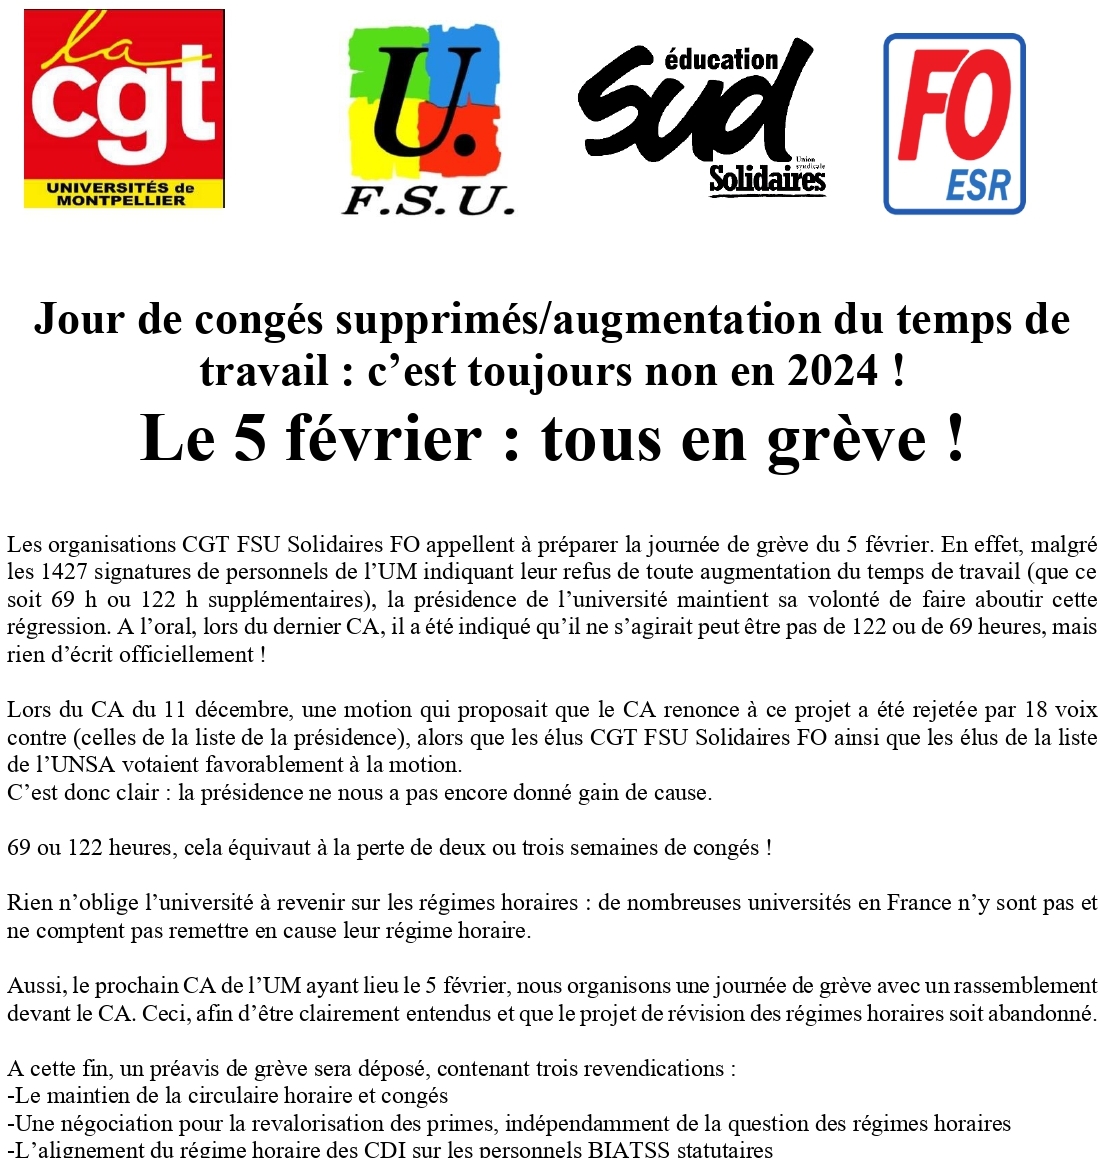 Les personnels de l'Université de #Montpellier seront en grève le 5 février